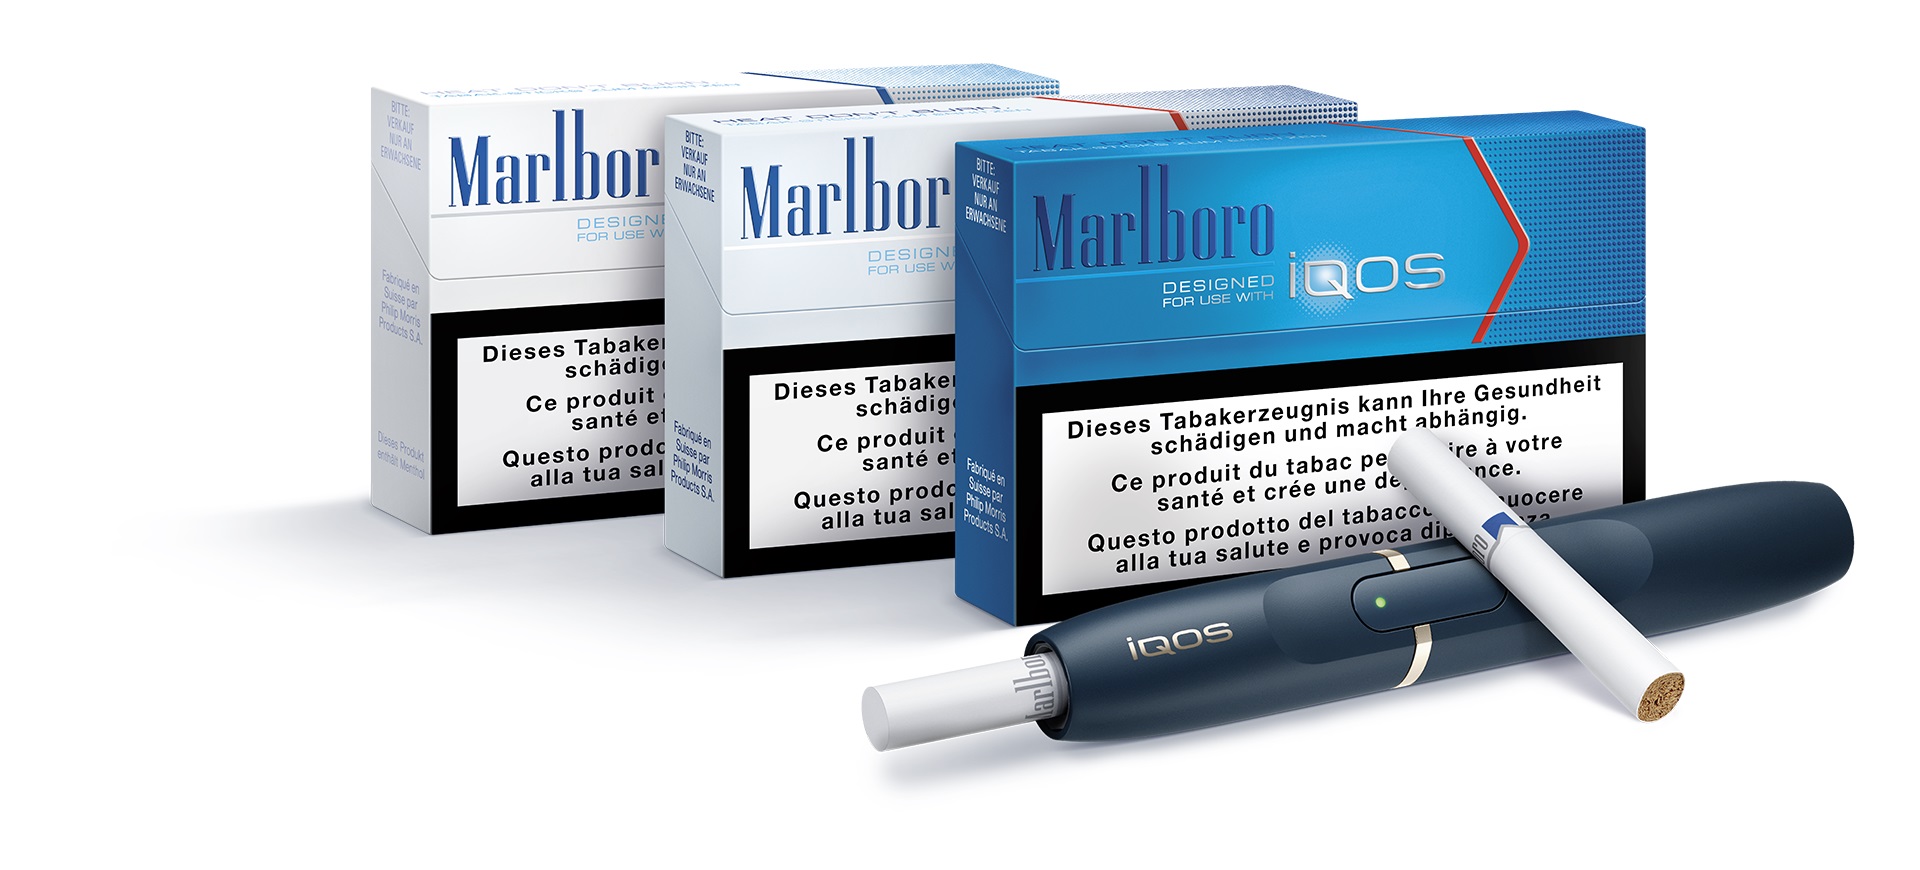 Philip Morris S.A. lanciert iQOS in der Schweiz, ein